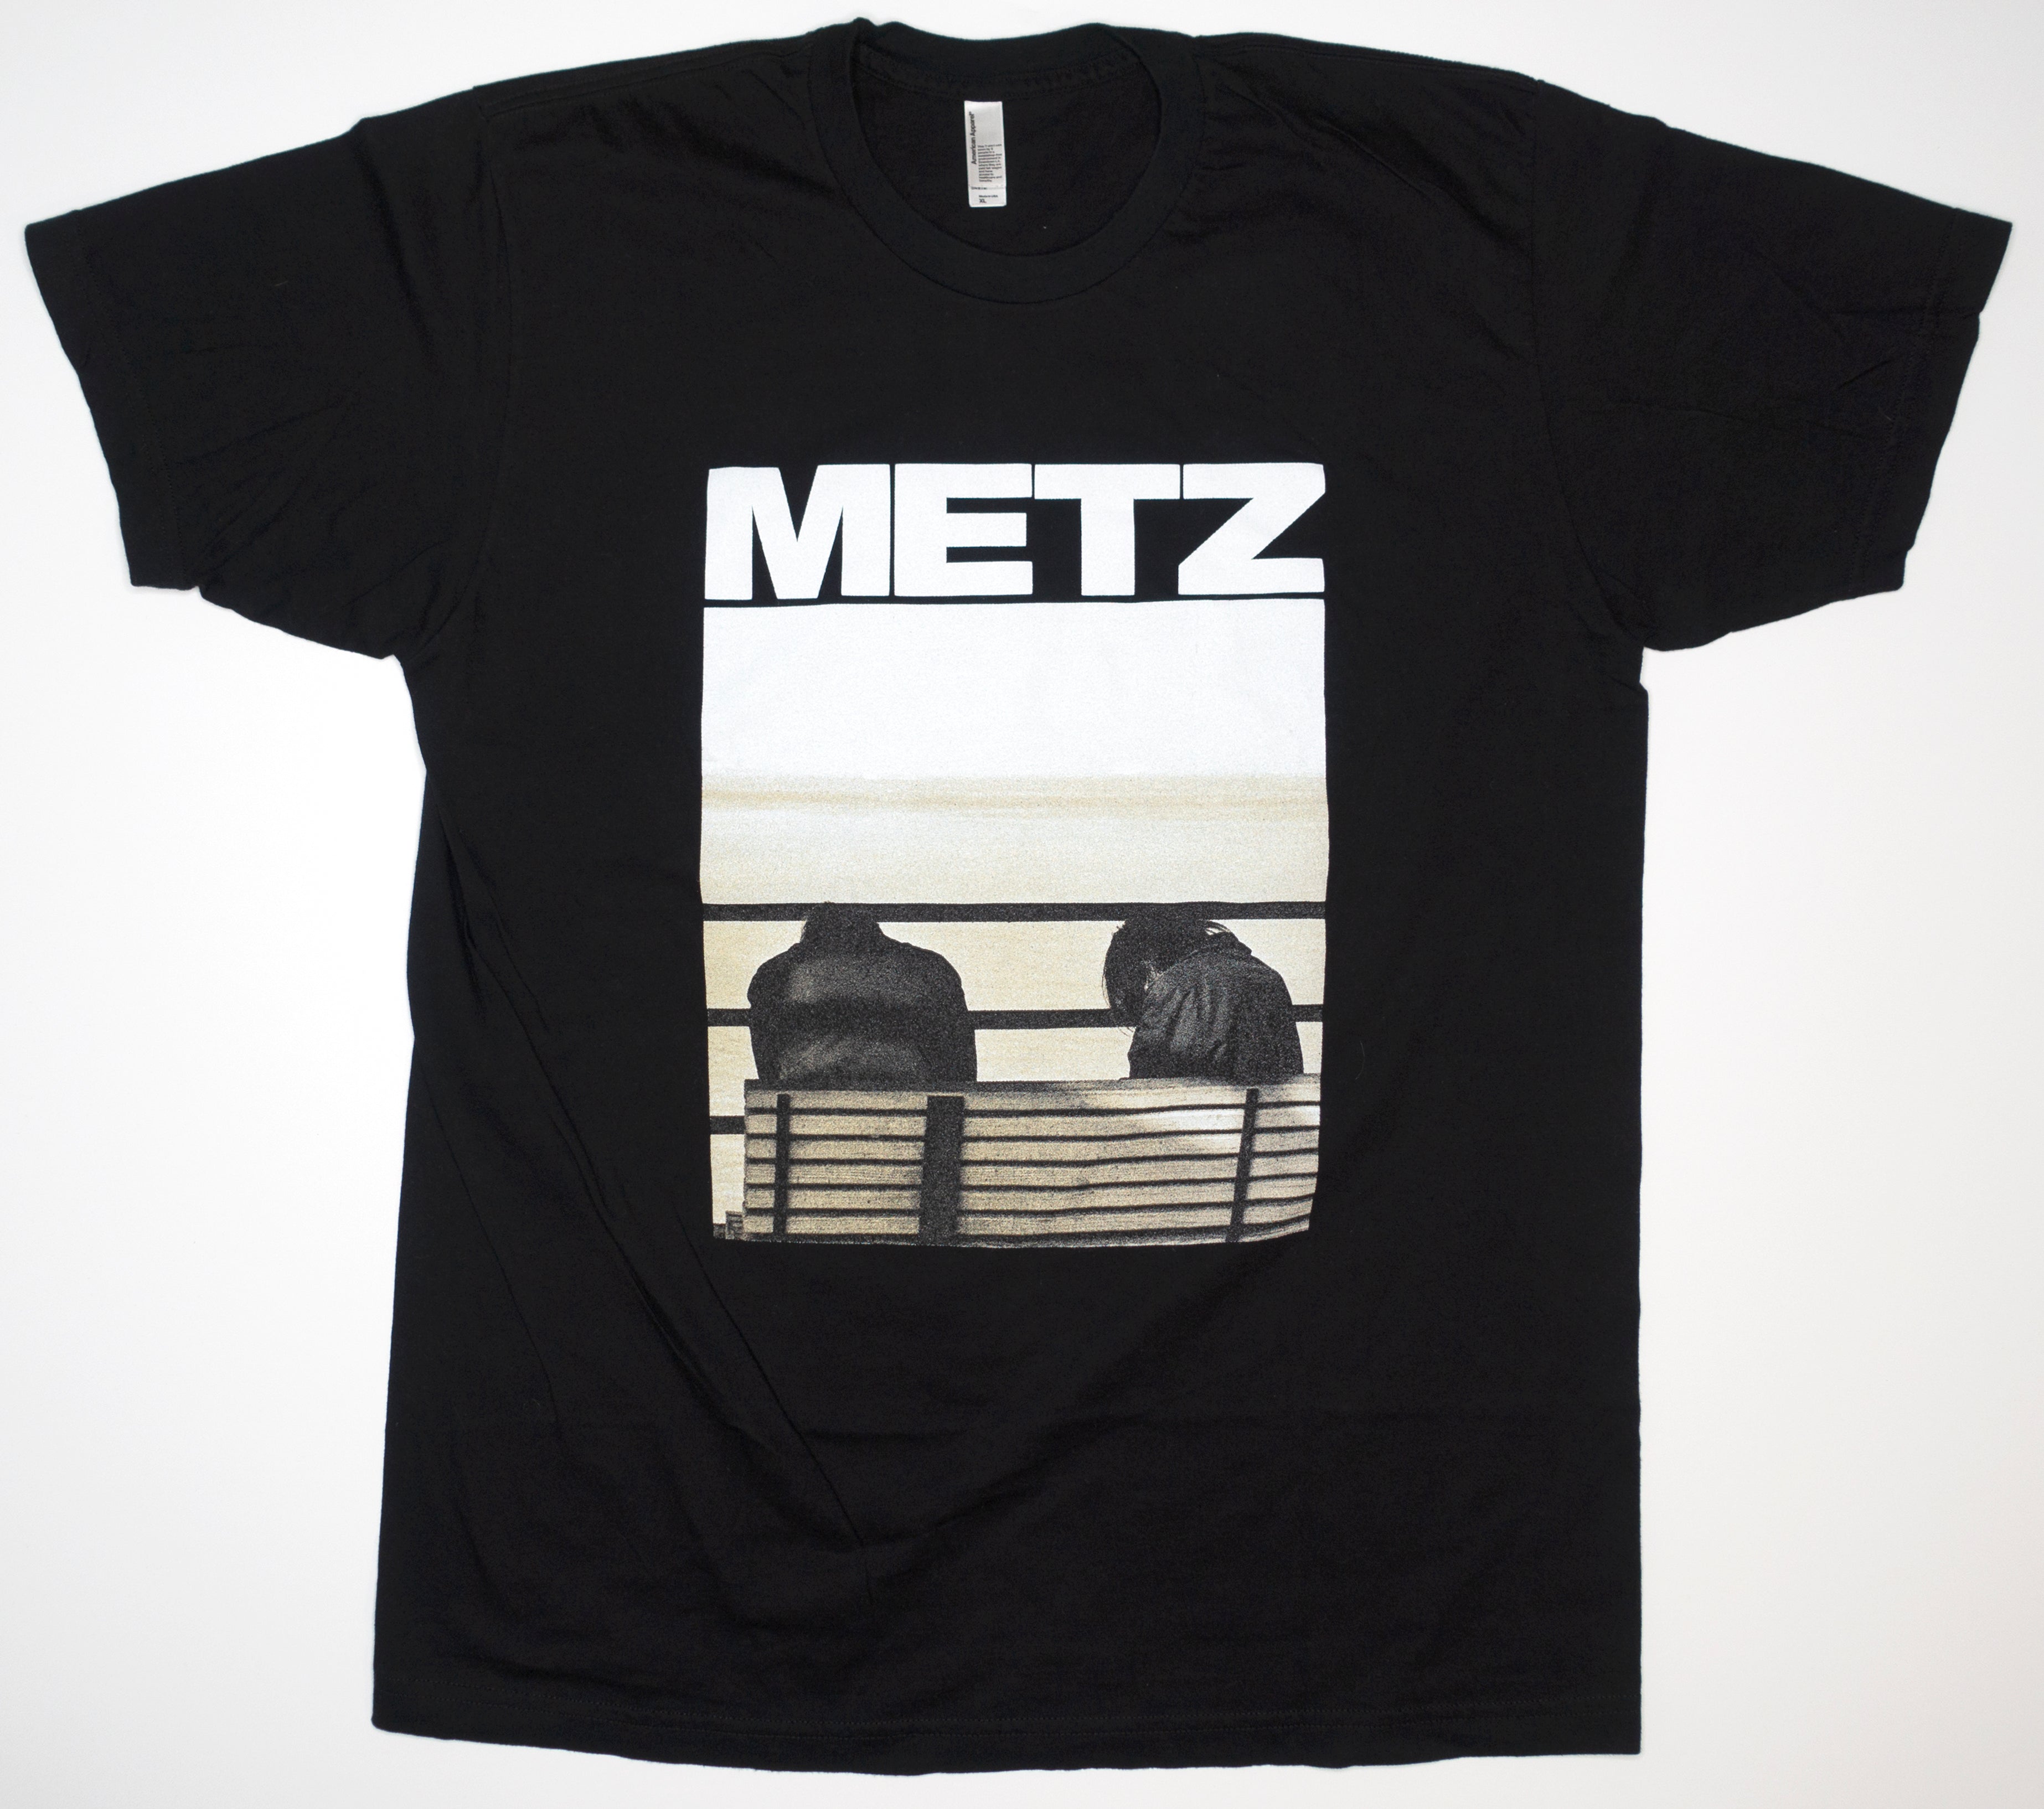 METZ - Metz II Cover 2015 Tour Shirt Size Large